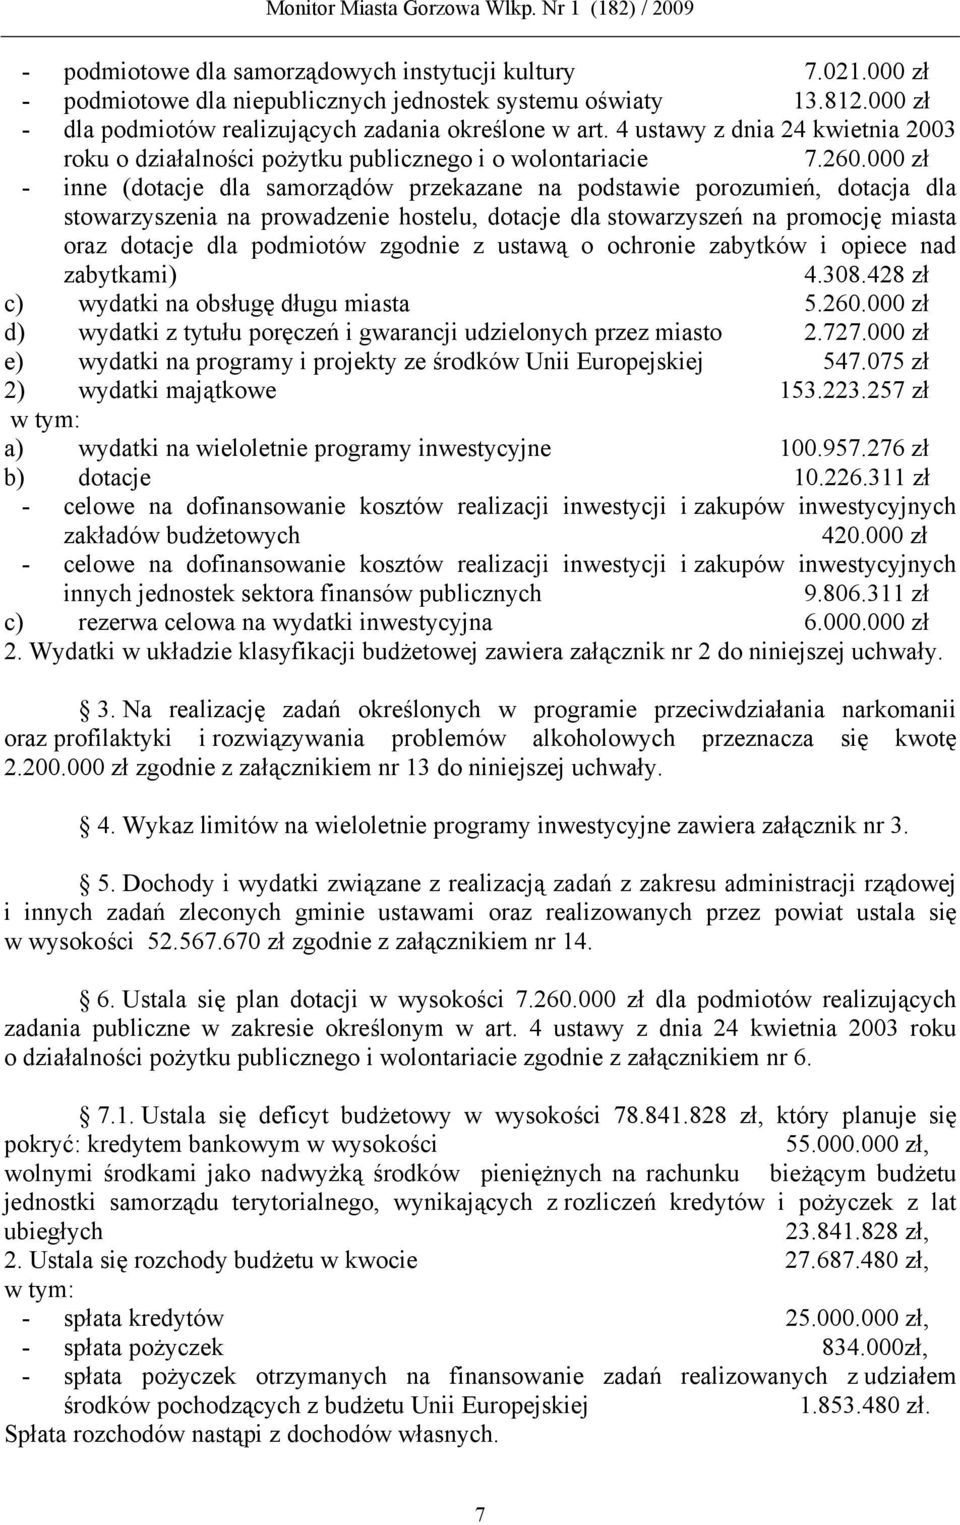 000 zł - inne (dotacje dla samorządów przekazane na podstawie porozumień, dotacja dla stowarzyszenia na prowadzenie hostelu, dotacje dla stowarzyszeń na promocję miasta oraz dotacje dla podmiotów